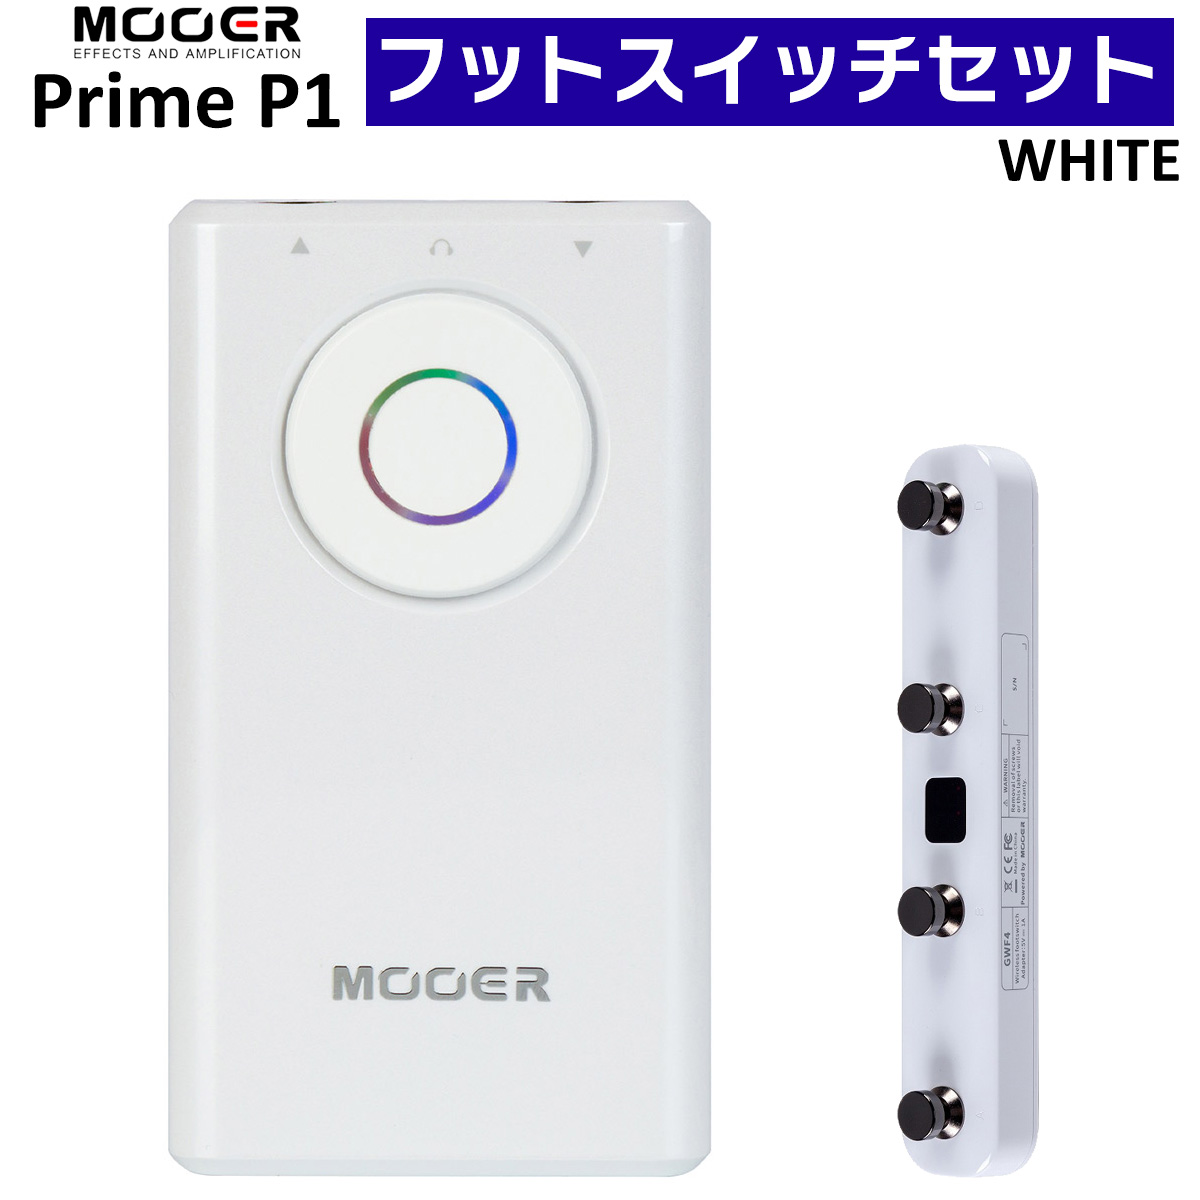 楽天市場】MOOER Prime P1 WH + GWF4 フットスイッチセット 超小型